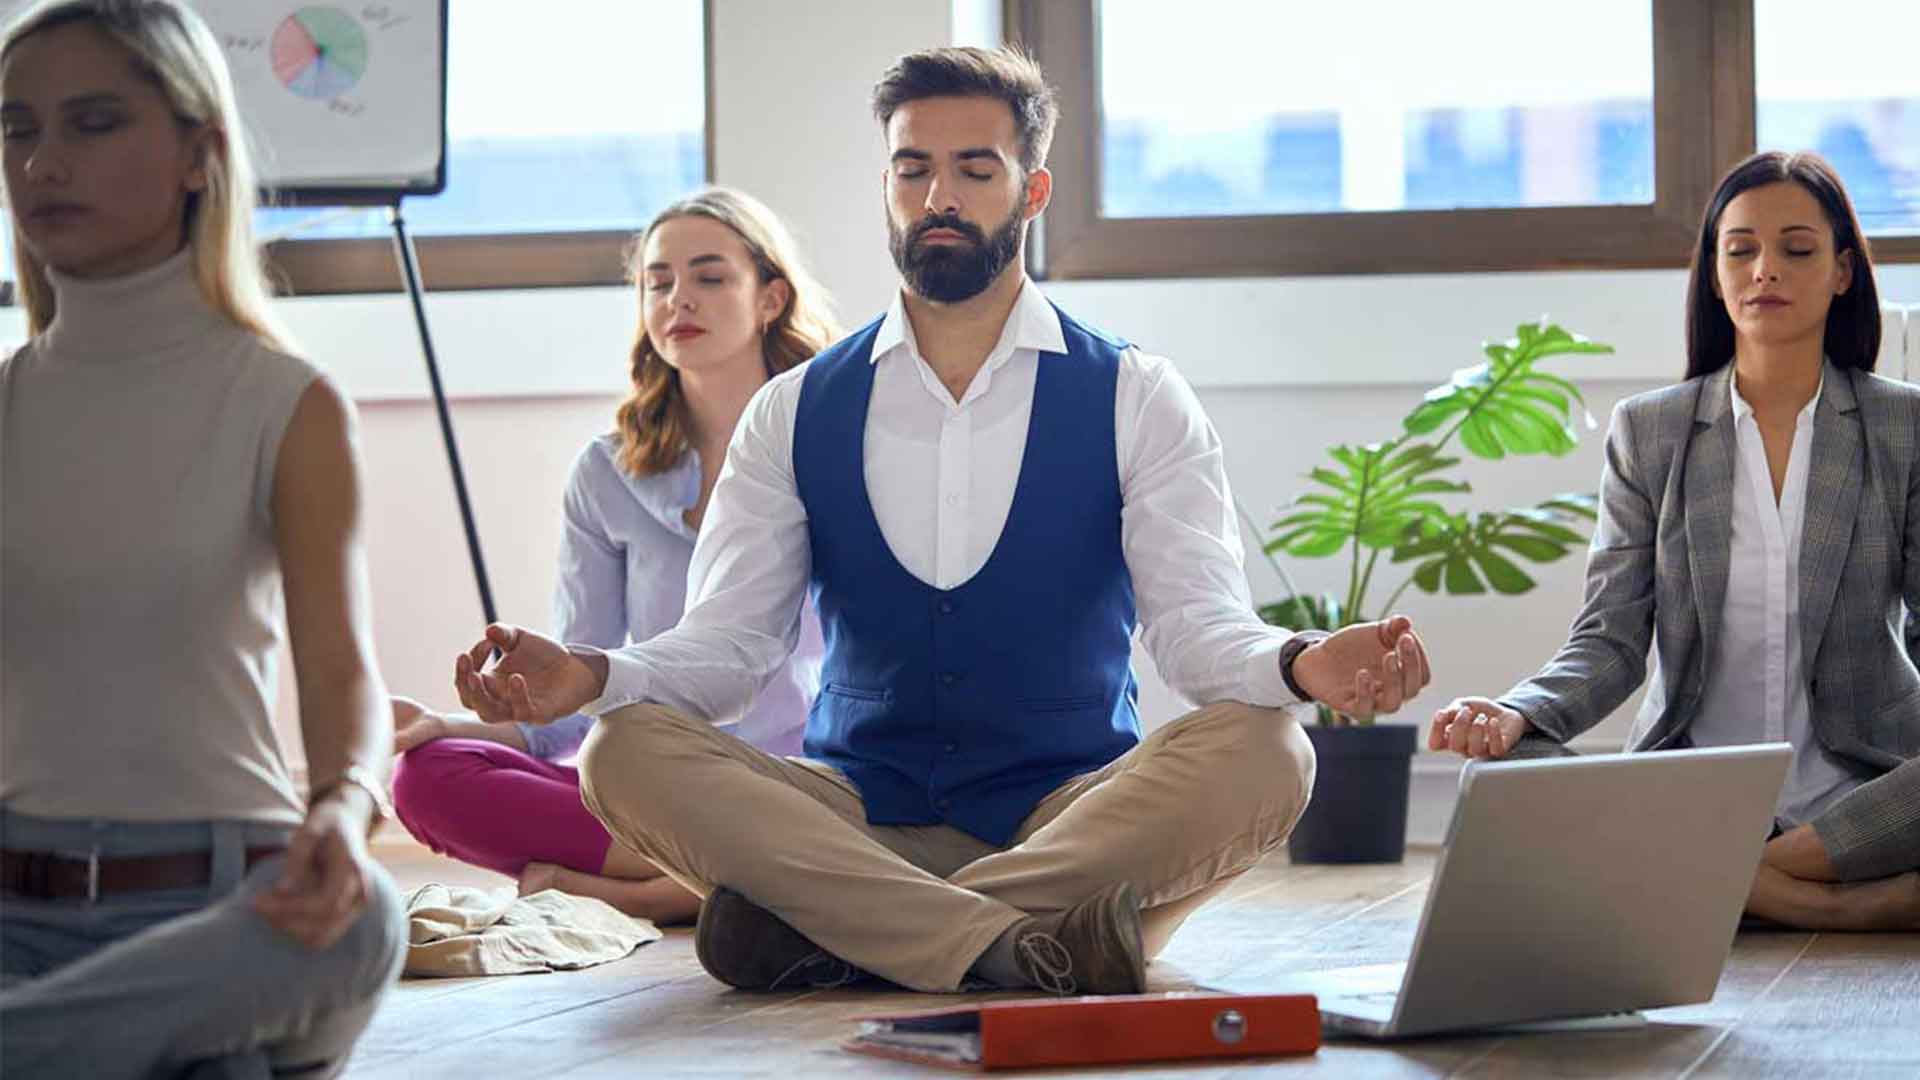 Mindfulness: El lado humano de los negocios